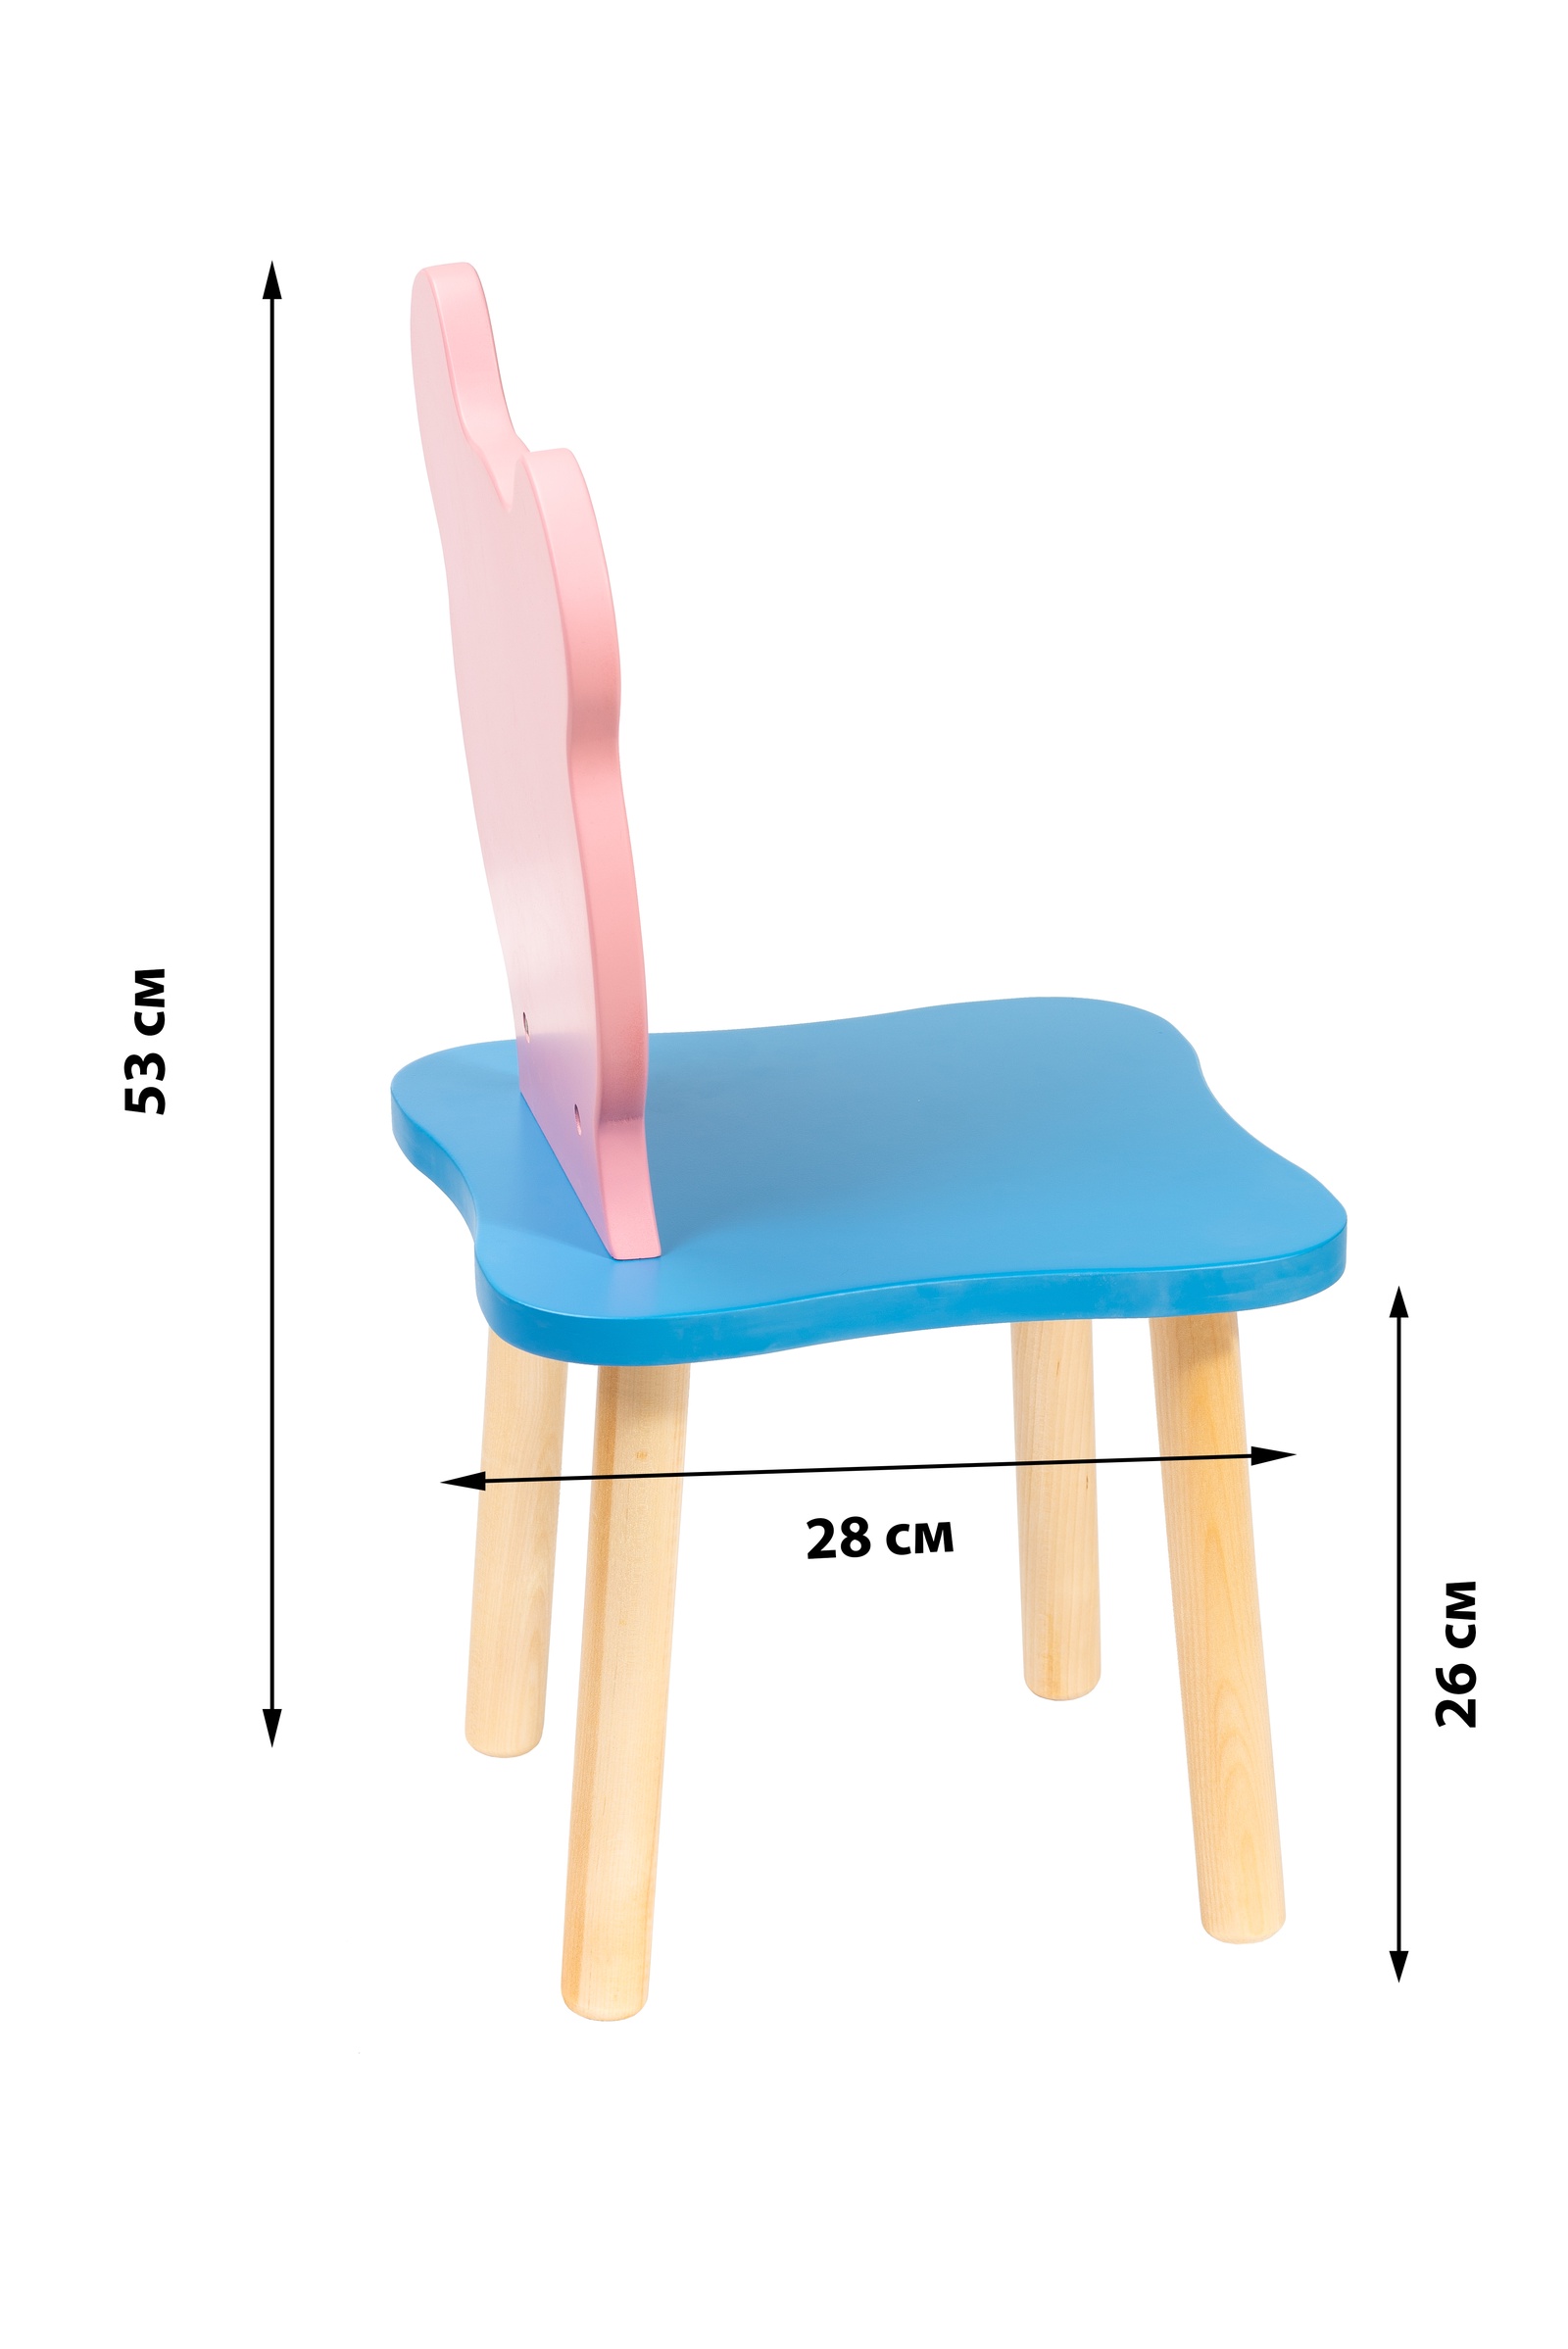 Высота детского стульчика